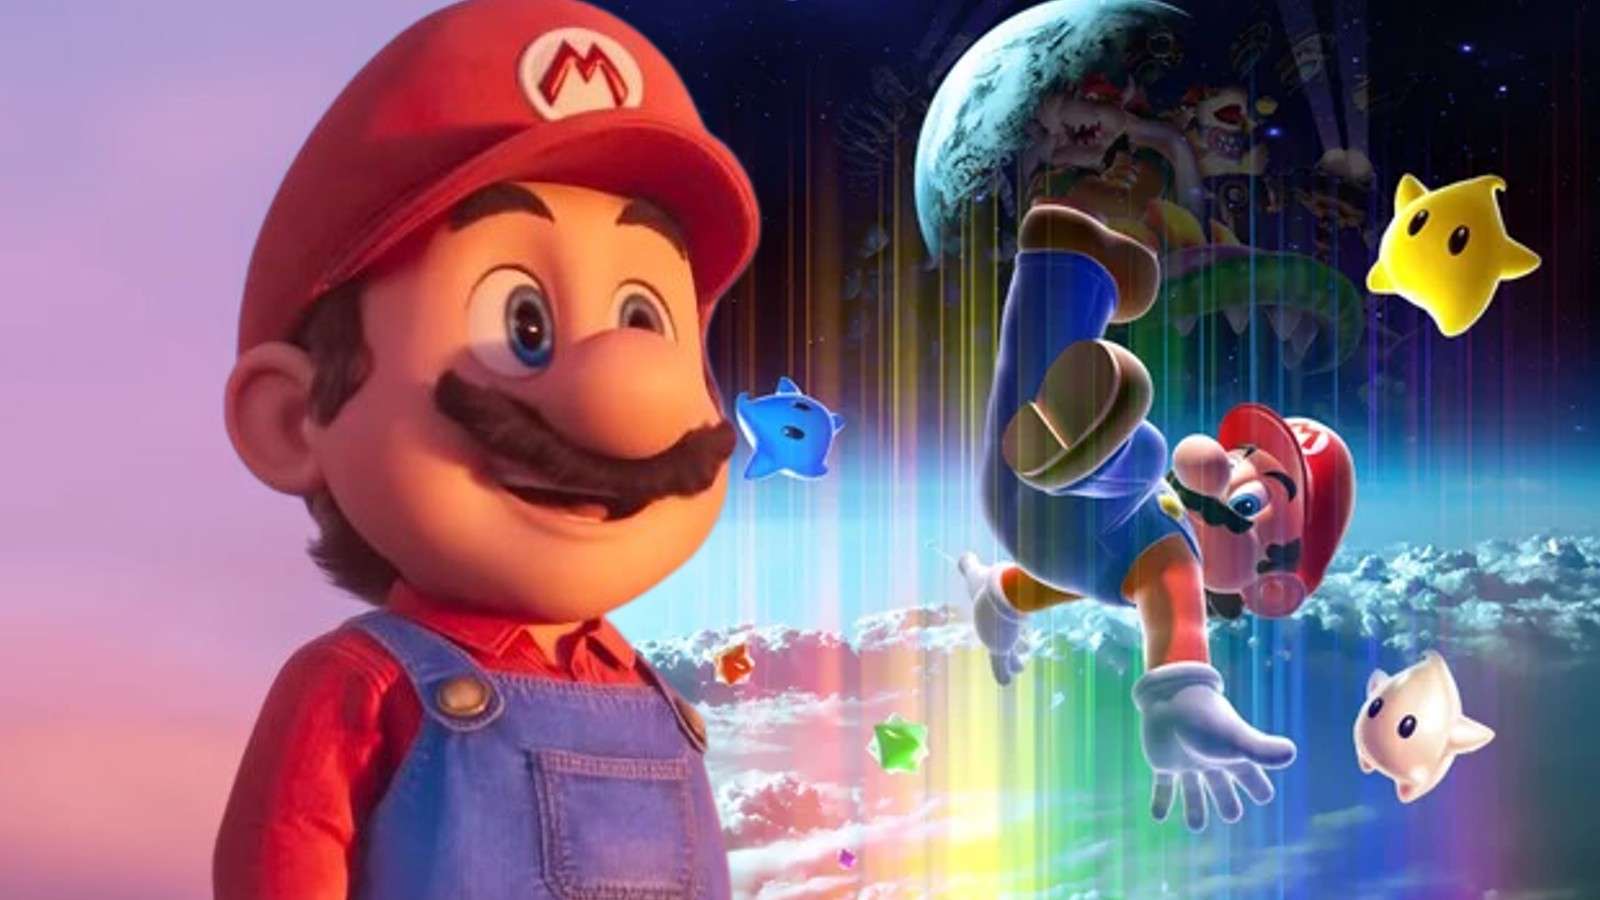 Mario in the Super Mario Bros and Mario and Lumas in Super Mario Galaxy